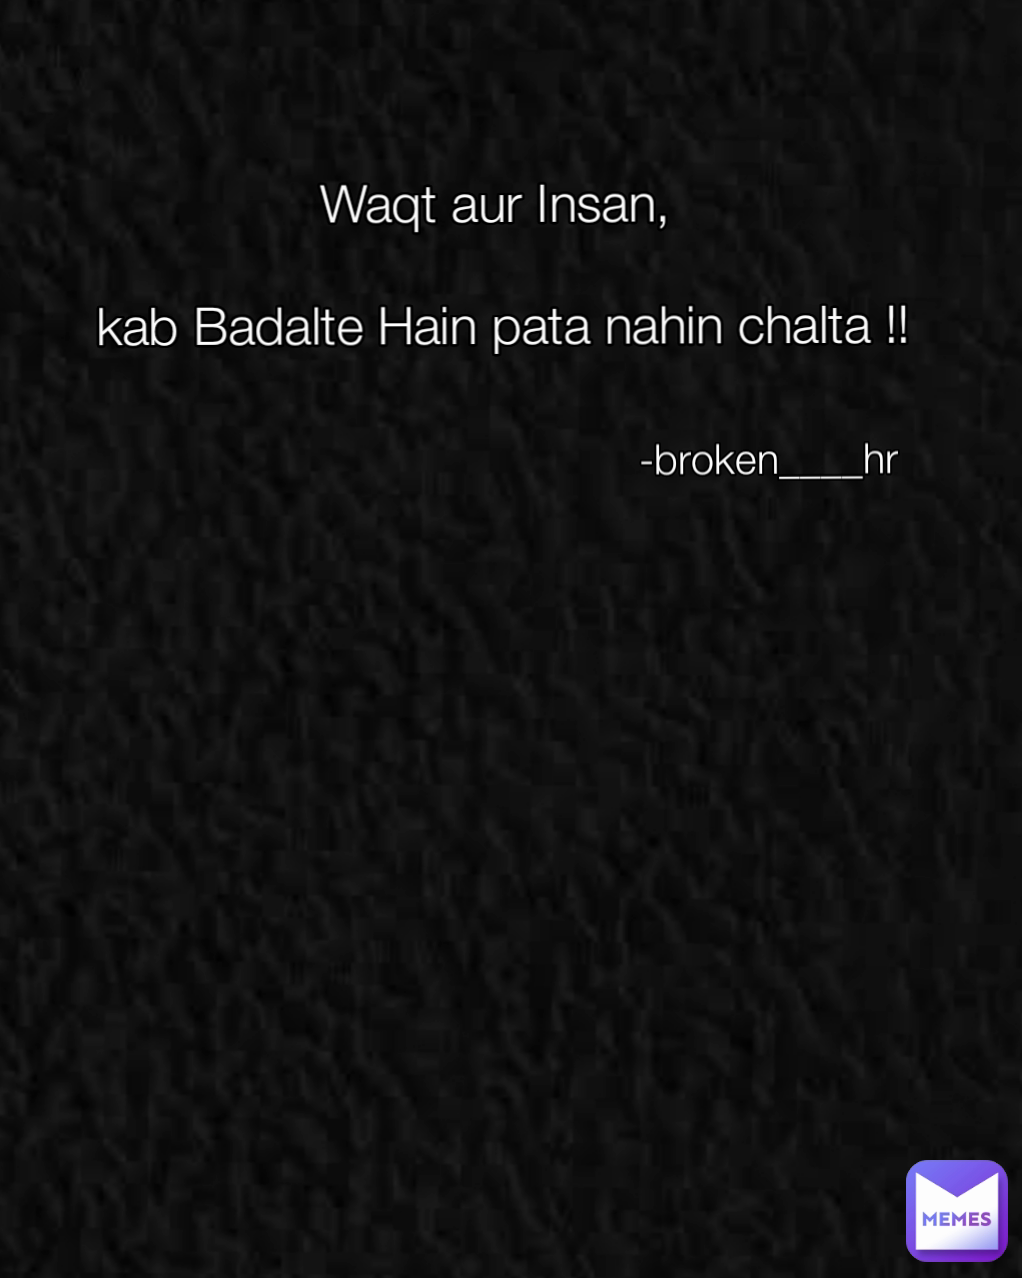 Waqt aur Insan,

 kab Badalte Hain pata nahin chalta !! -broken____hr